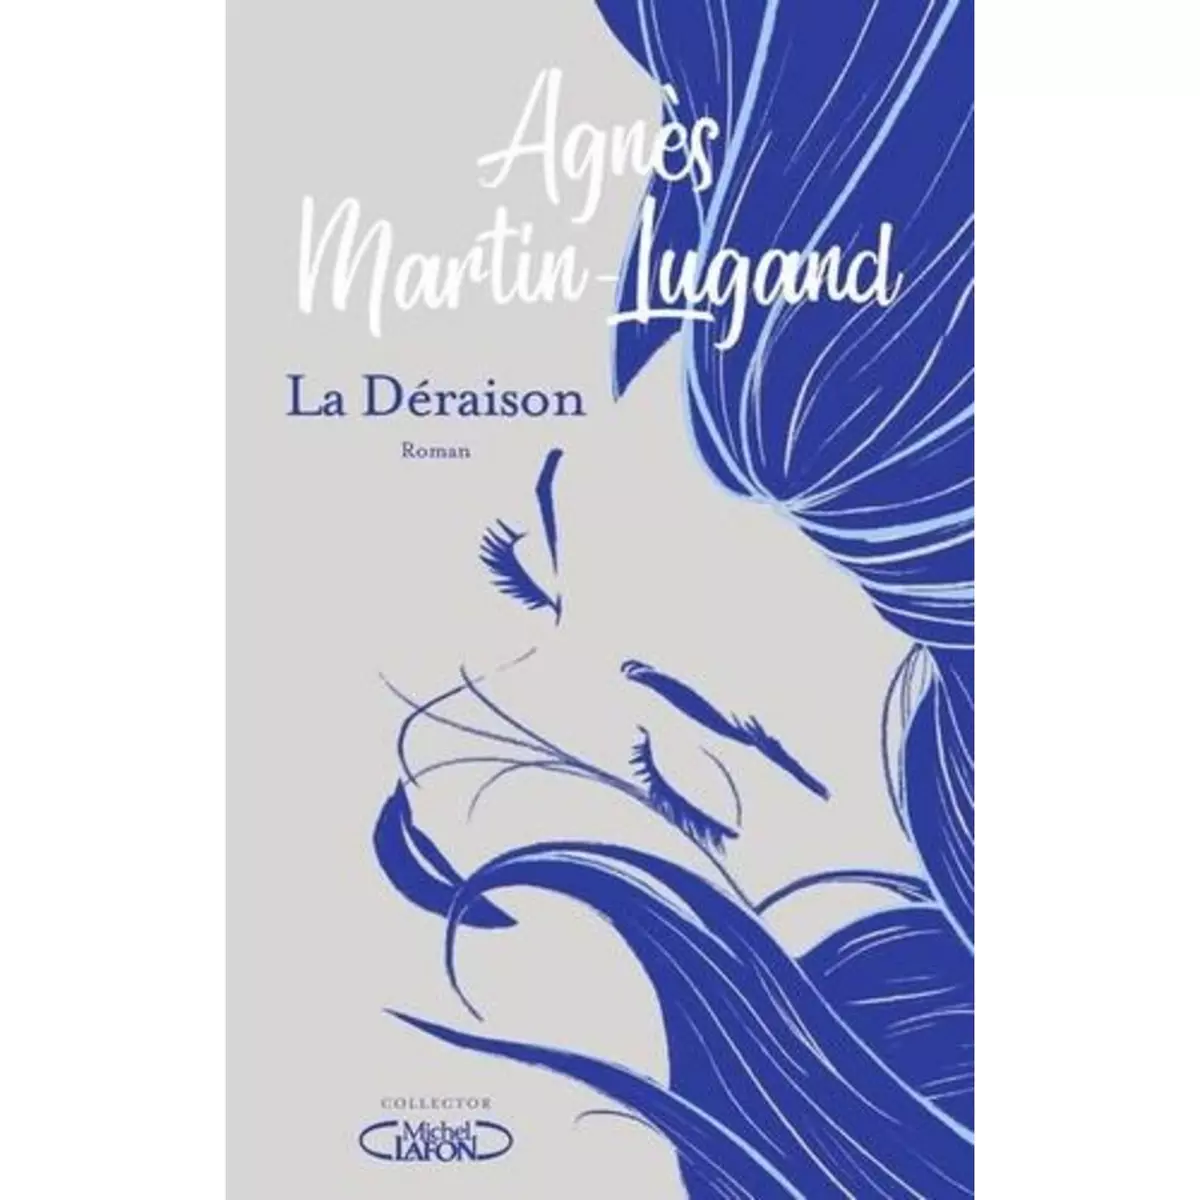  LA DERAISON. EDITION COLLECTOR, Martin-Lugand Agnès